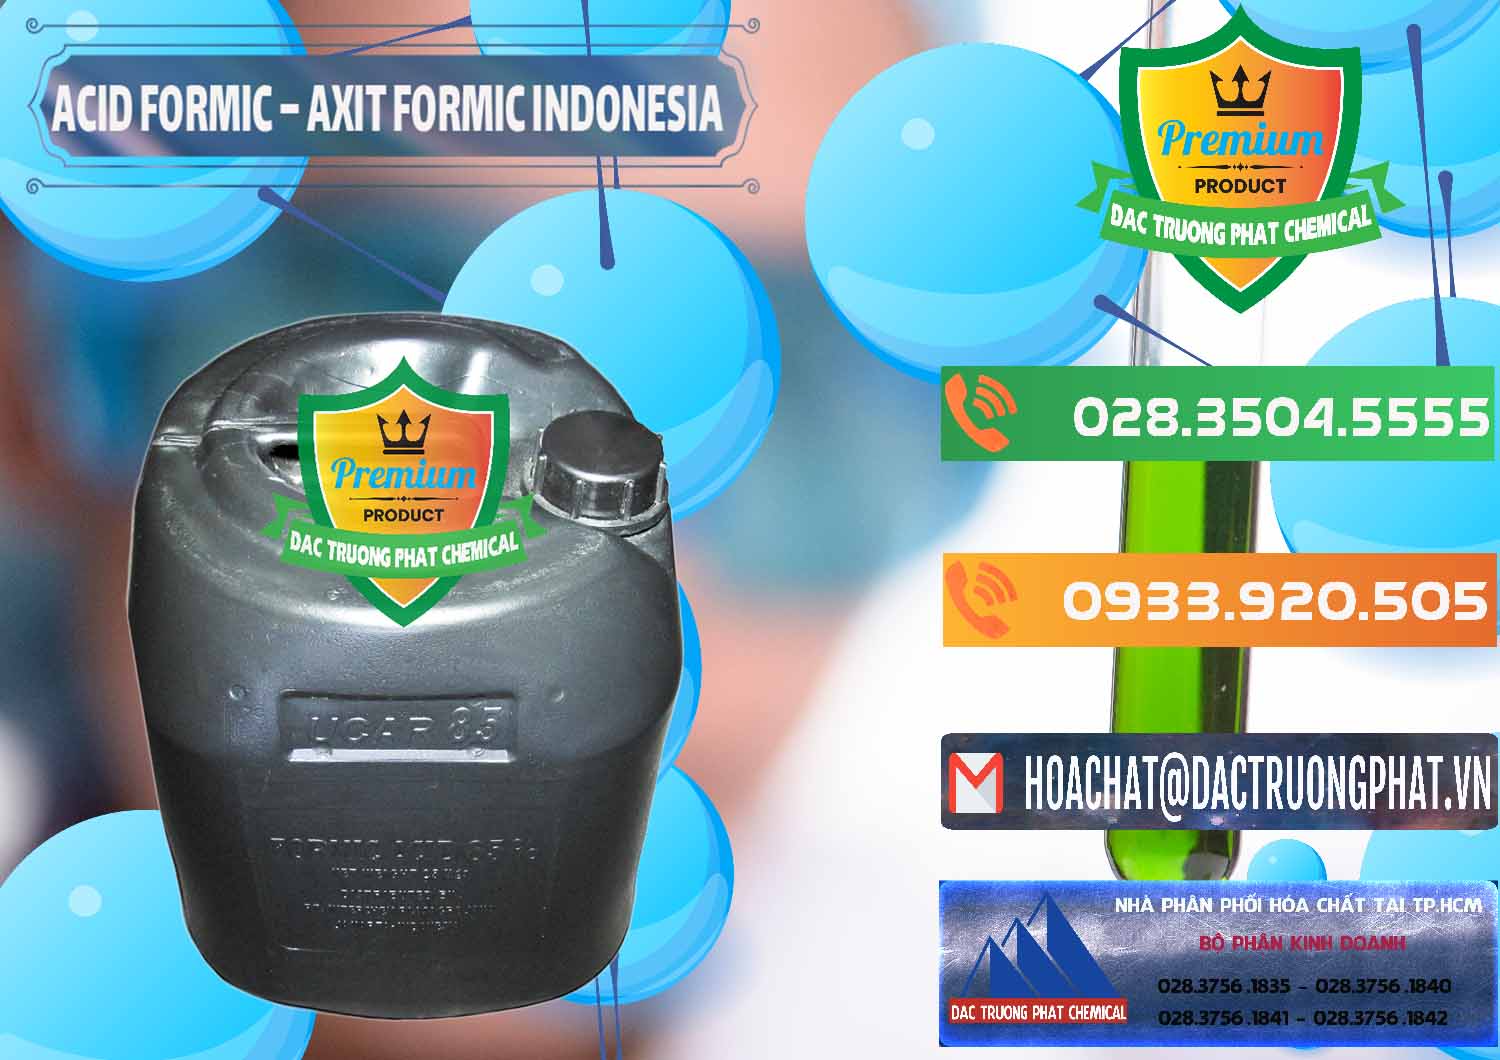 Chuyên bán & phân phối Acid Formic - Axit Formic Indonesia - 0026 - Phân phối ( cung ứng ) hóa chất tại TP.HCM - hoachatxulynuoc.com.vn